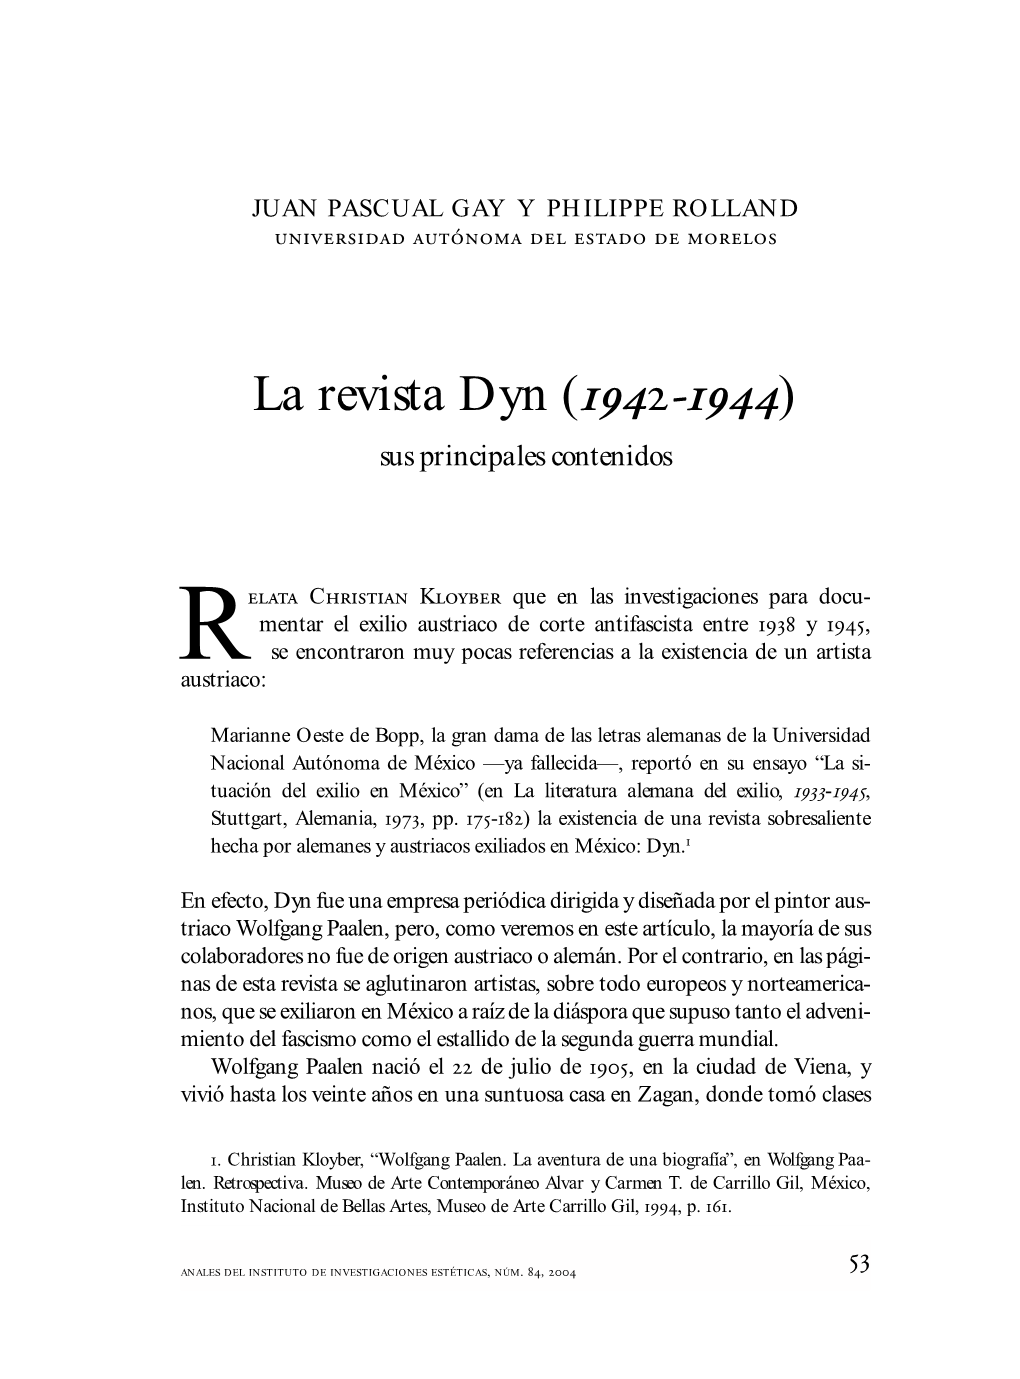 Analesiie84, UNAM, 2004. La Revista Dyn (1942-1944)